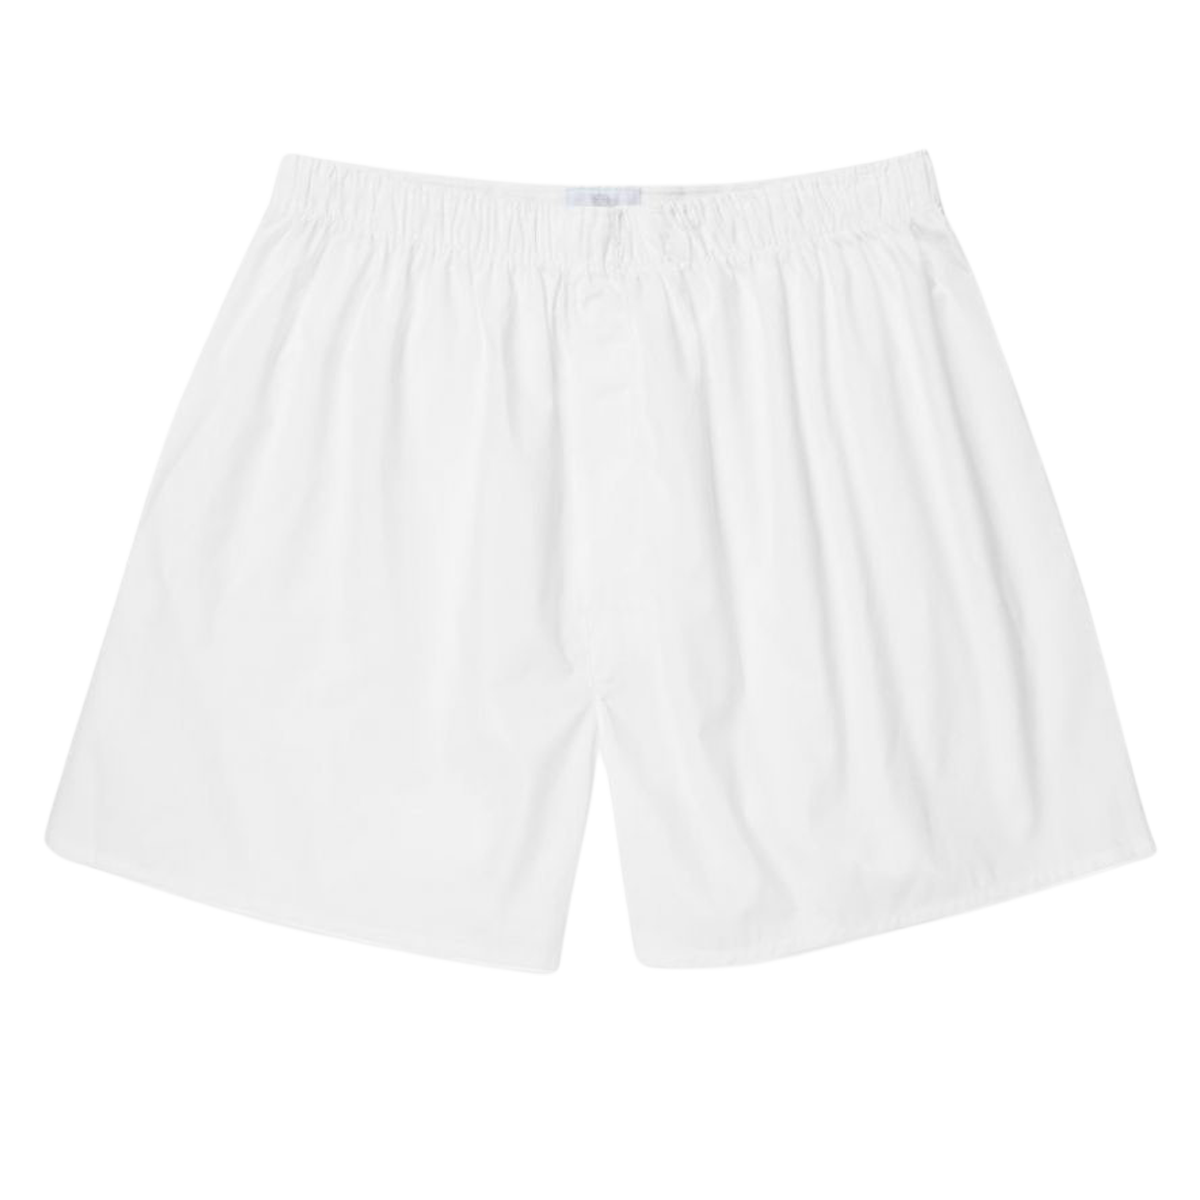 Sunspel White Cotton Boxer Shorts Feature